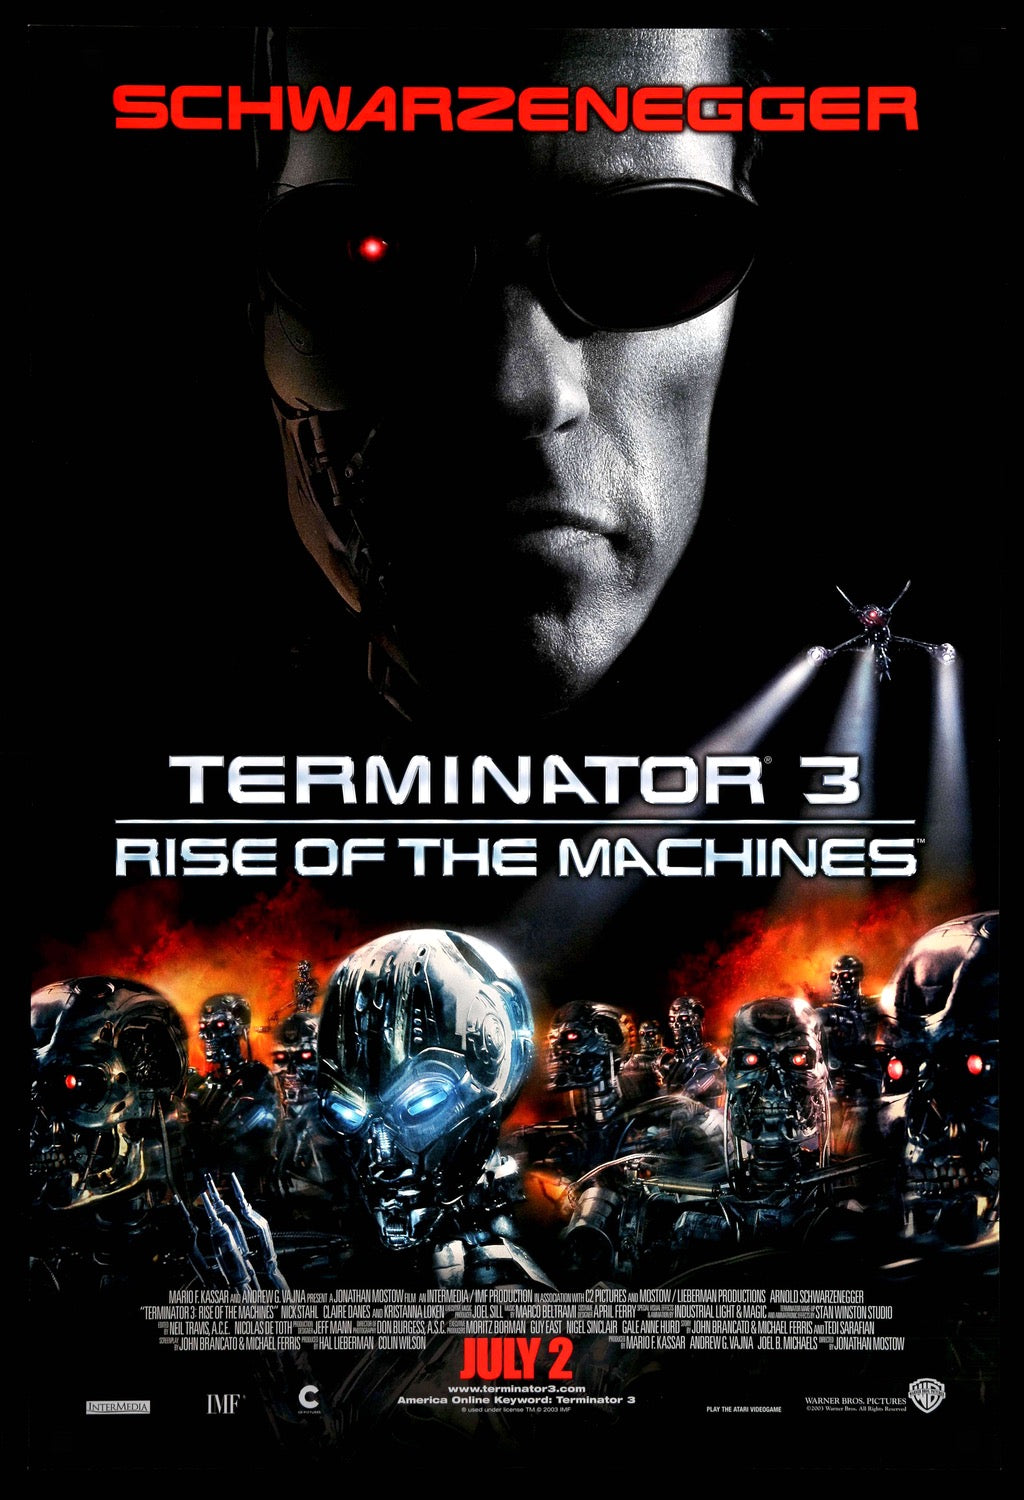 Terminator 3: Rise of the Machines (2003) original movie poster for sale at Original Film Art